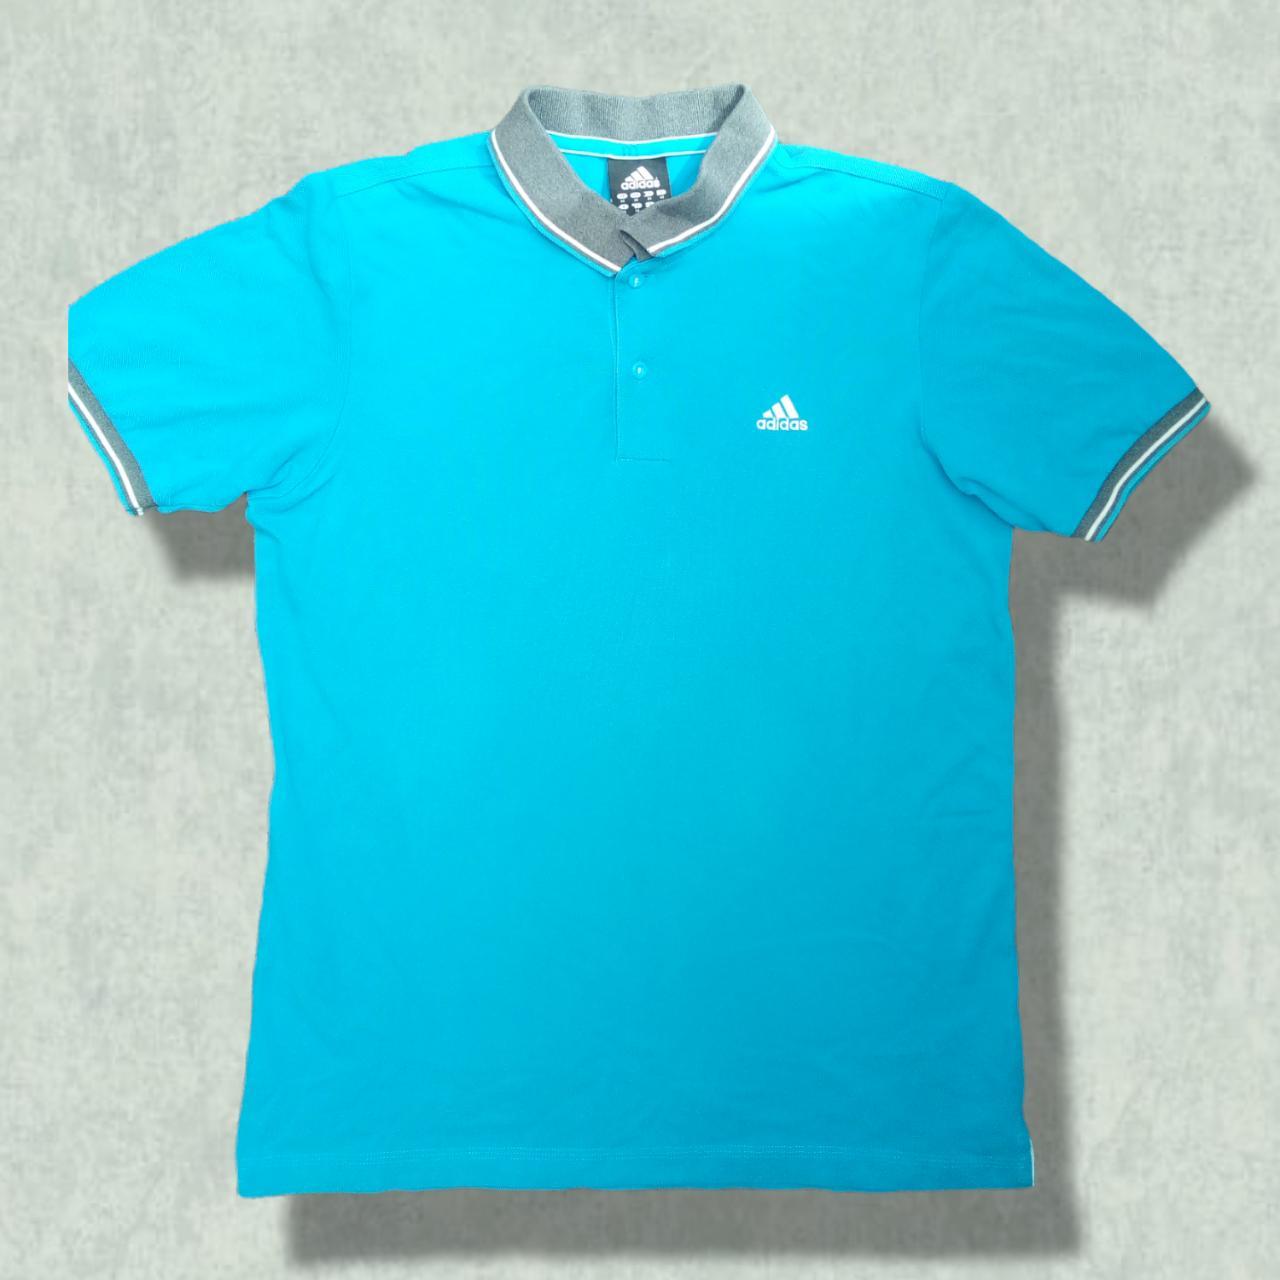 Adidas blue polo shirt Perfect condition Has no... - Depop